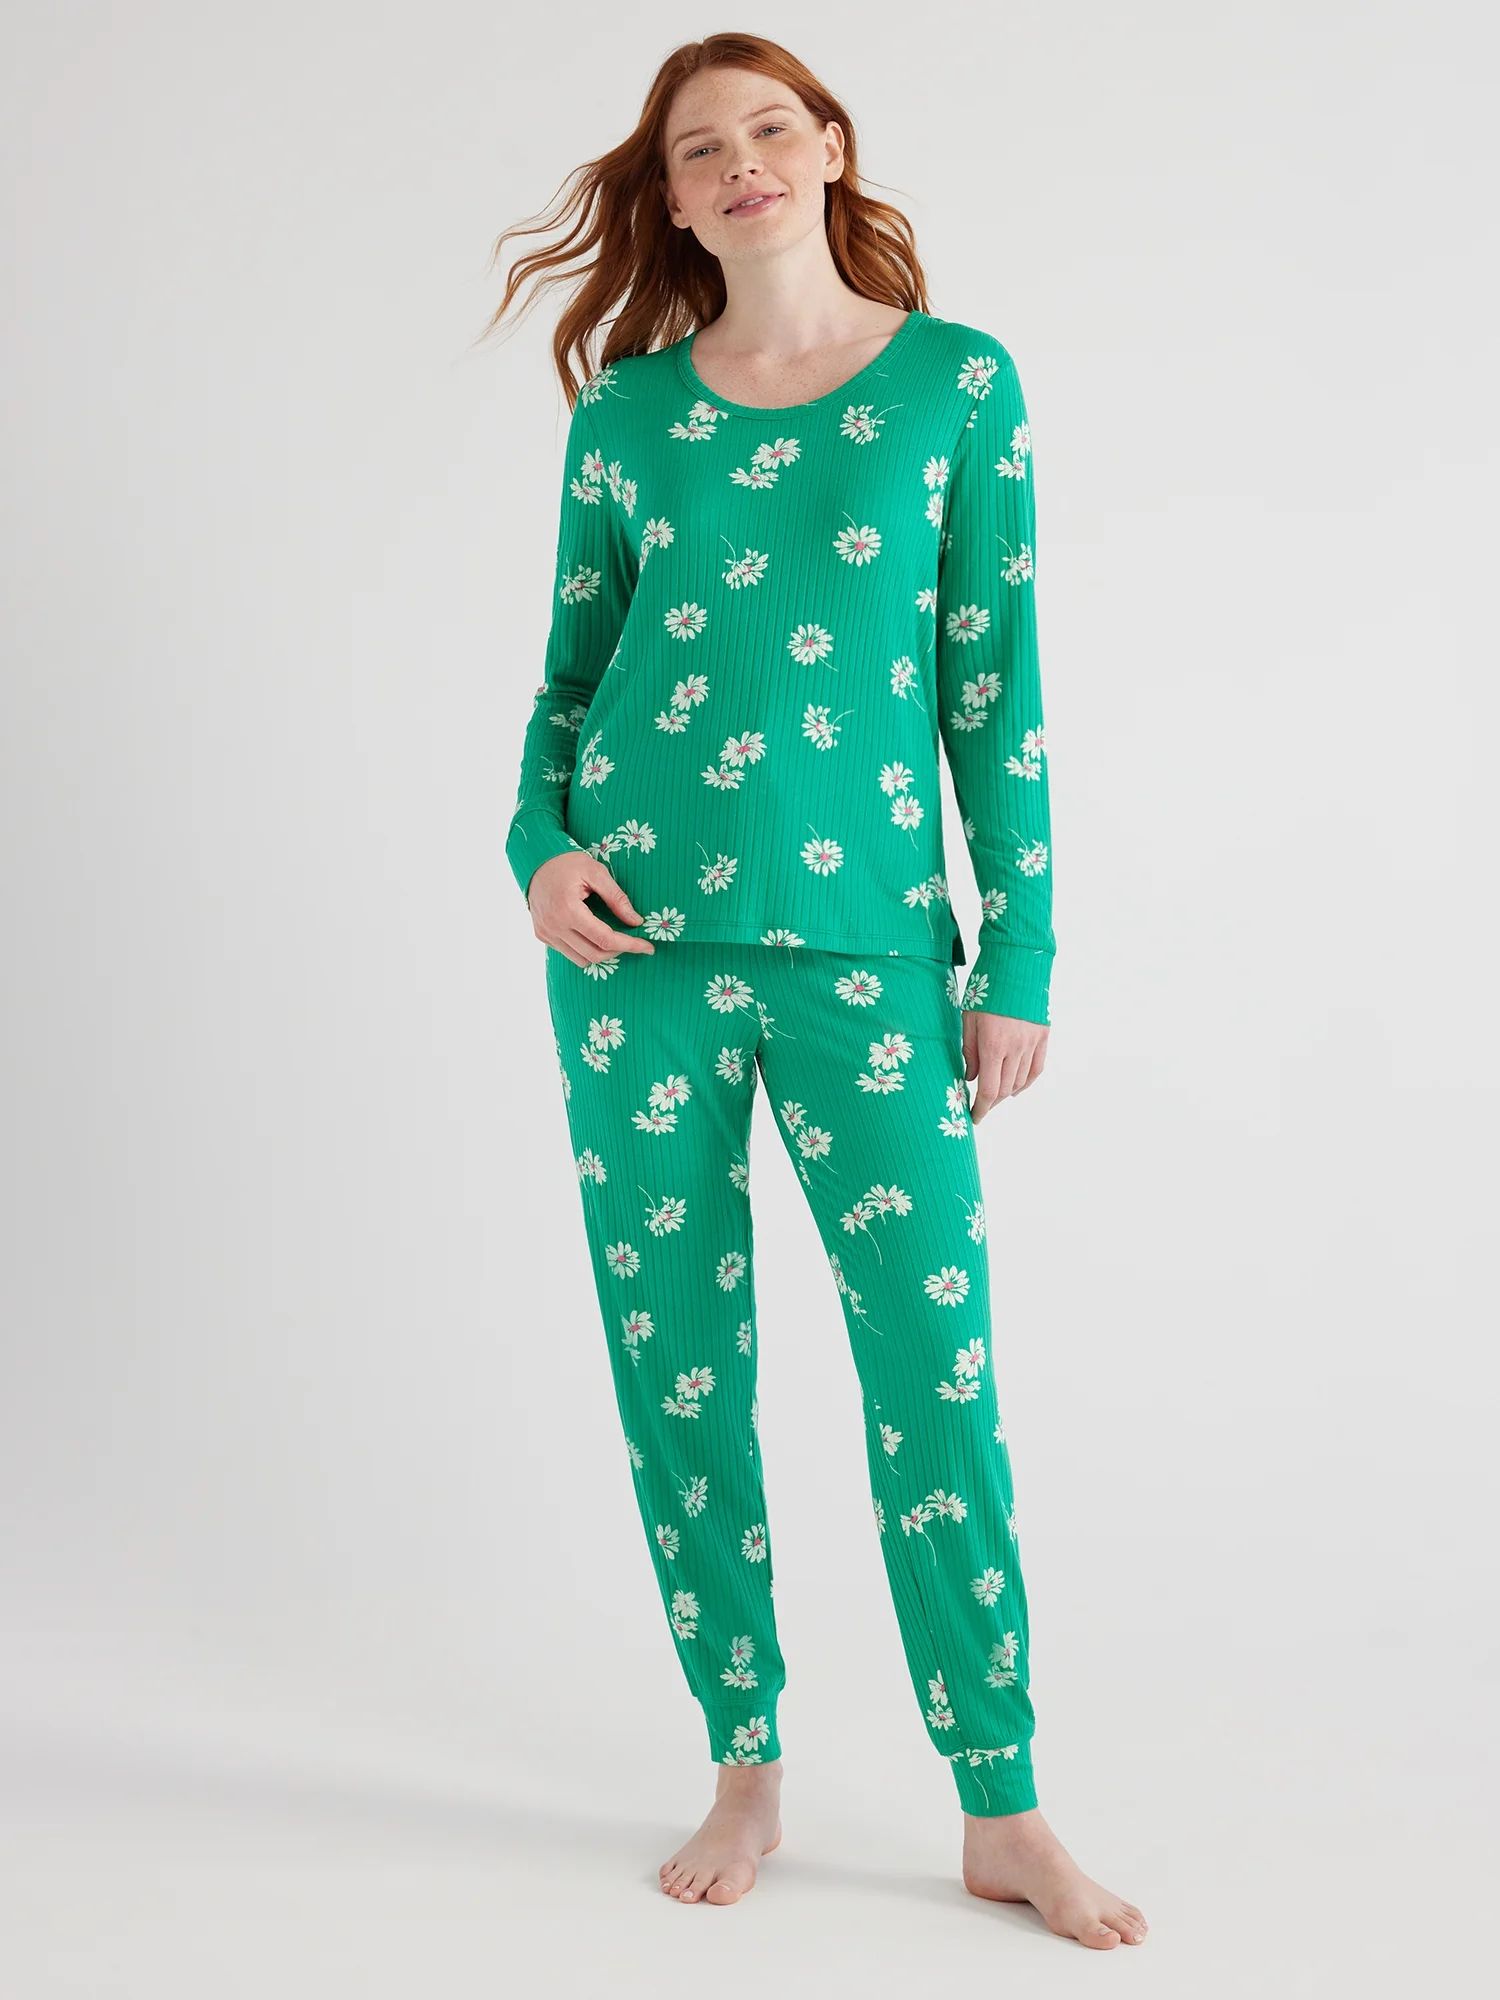 Joyspun Women’s Ribbed Top and Pants Pajama Set, Sizes S-3X | Walmart (US)